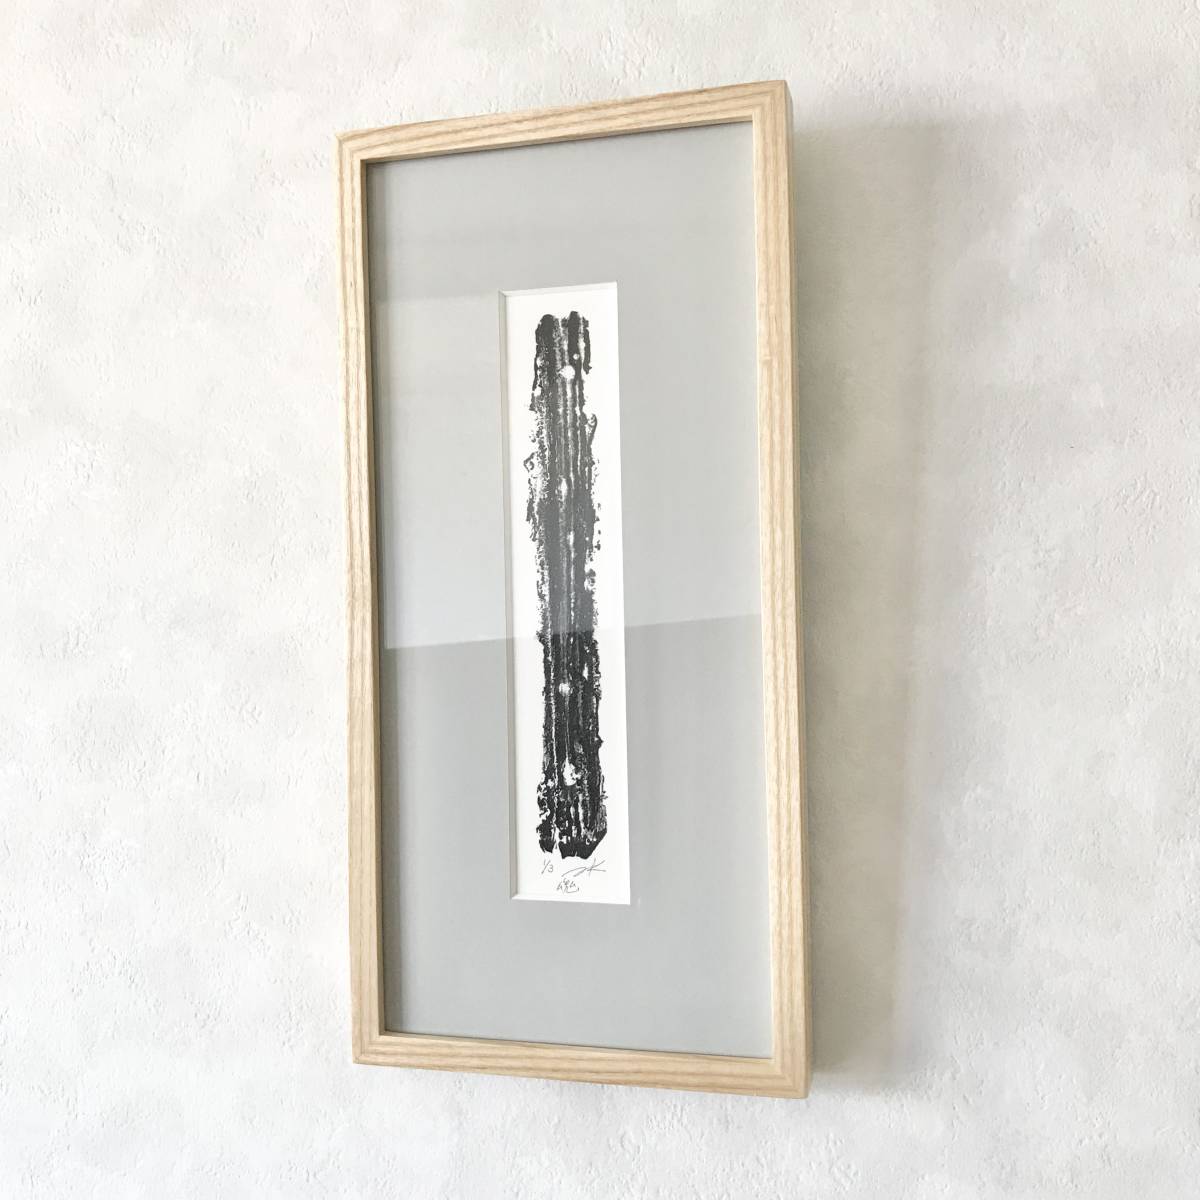 Encadré [Peinture acrylique sur impression] Soul Papier japonais monochrome art moderne peinture abstraite Noir monochrome authentique art contemporain, peinture, peinture à l'huile, peinture abstraite